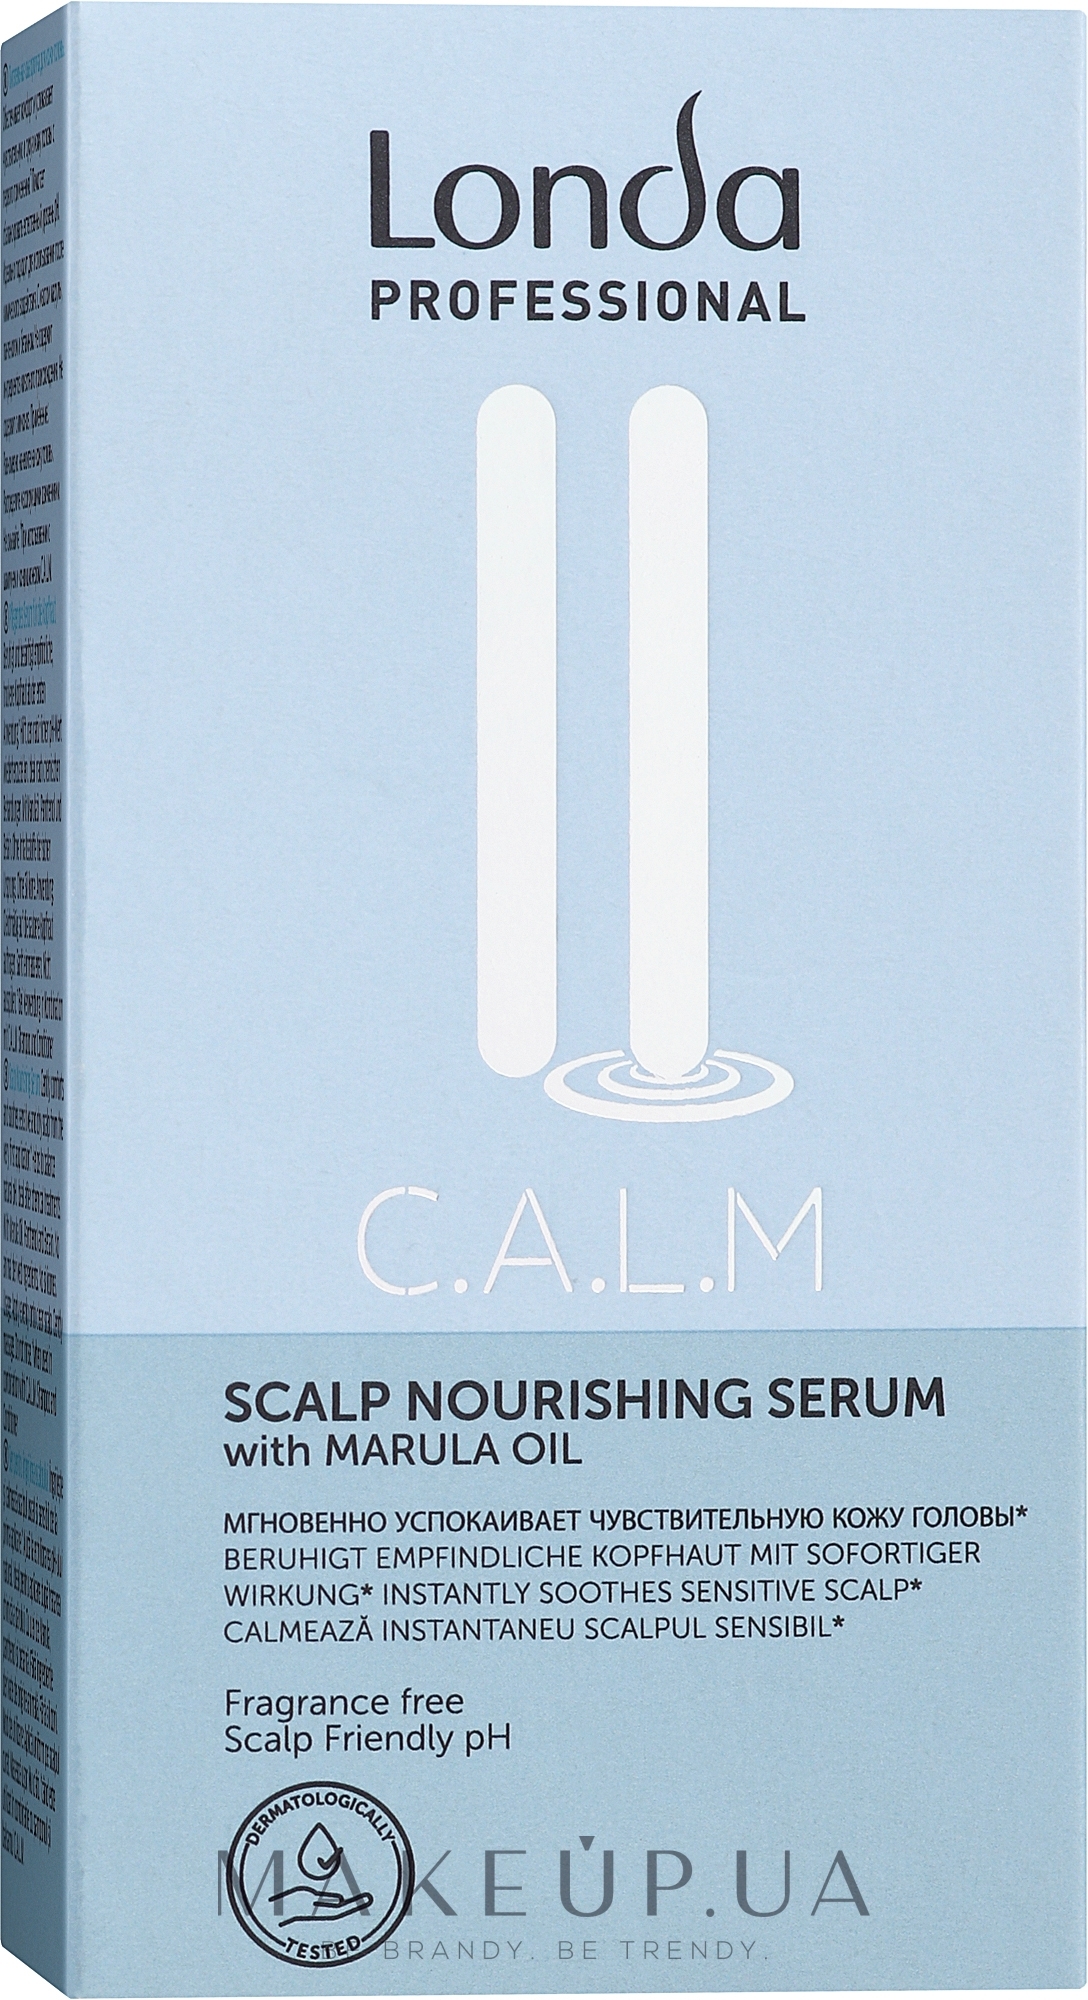 Питательная сыворотка для волос - Londa Professional C.A.L.M. Serum — фото 6x9ml